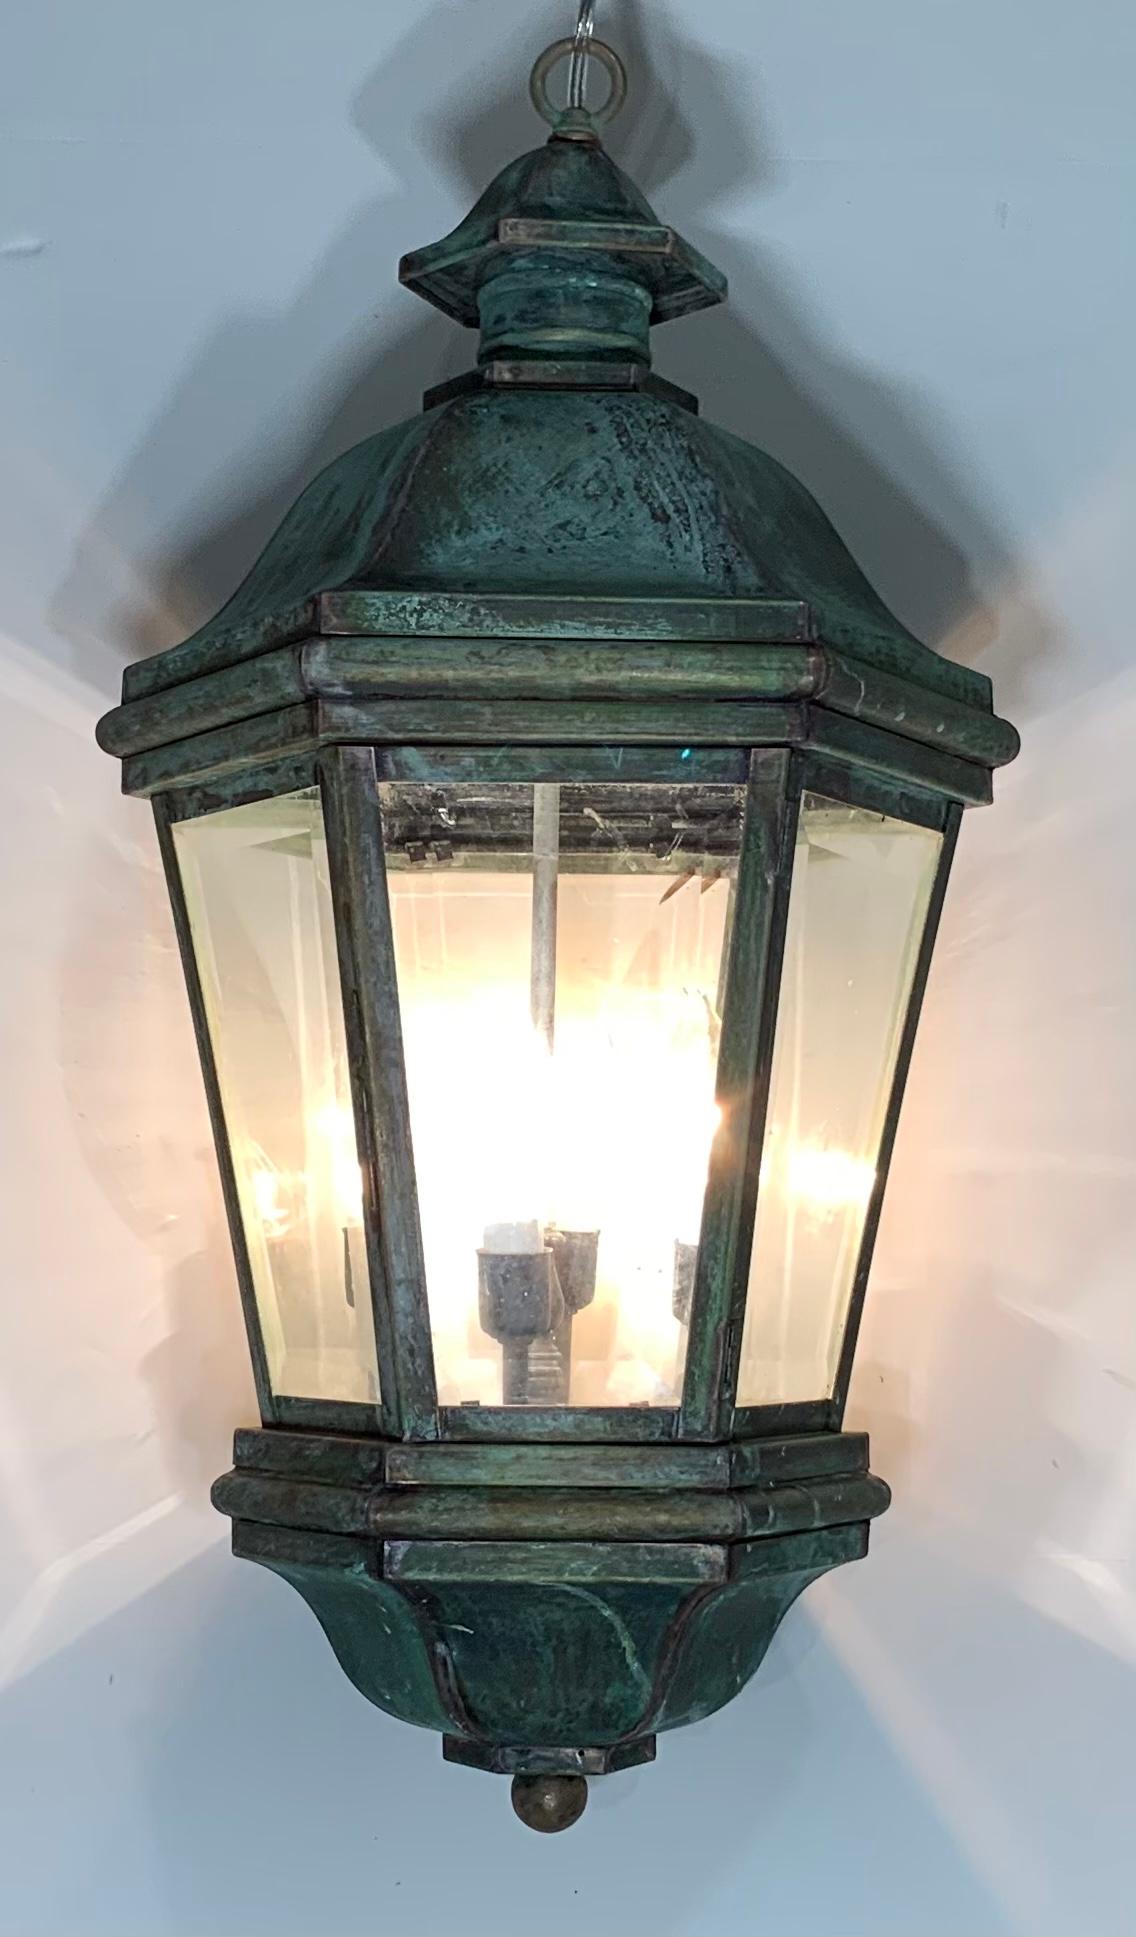 Elegante lanterne artisanale en laiton massif patiné vert, six faces en verre biseauté.
Électrifié avec quatre lampes de 40 watts, idéal pour les endroits humides, bien qu'il puisse également être utilisé comme éclairage décoratif d'intérieur.